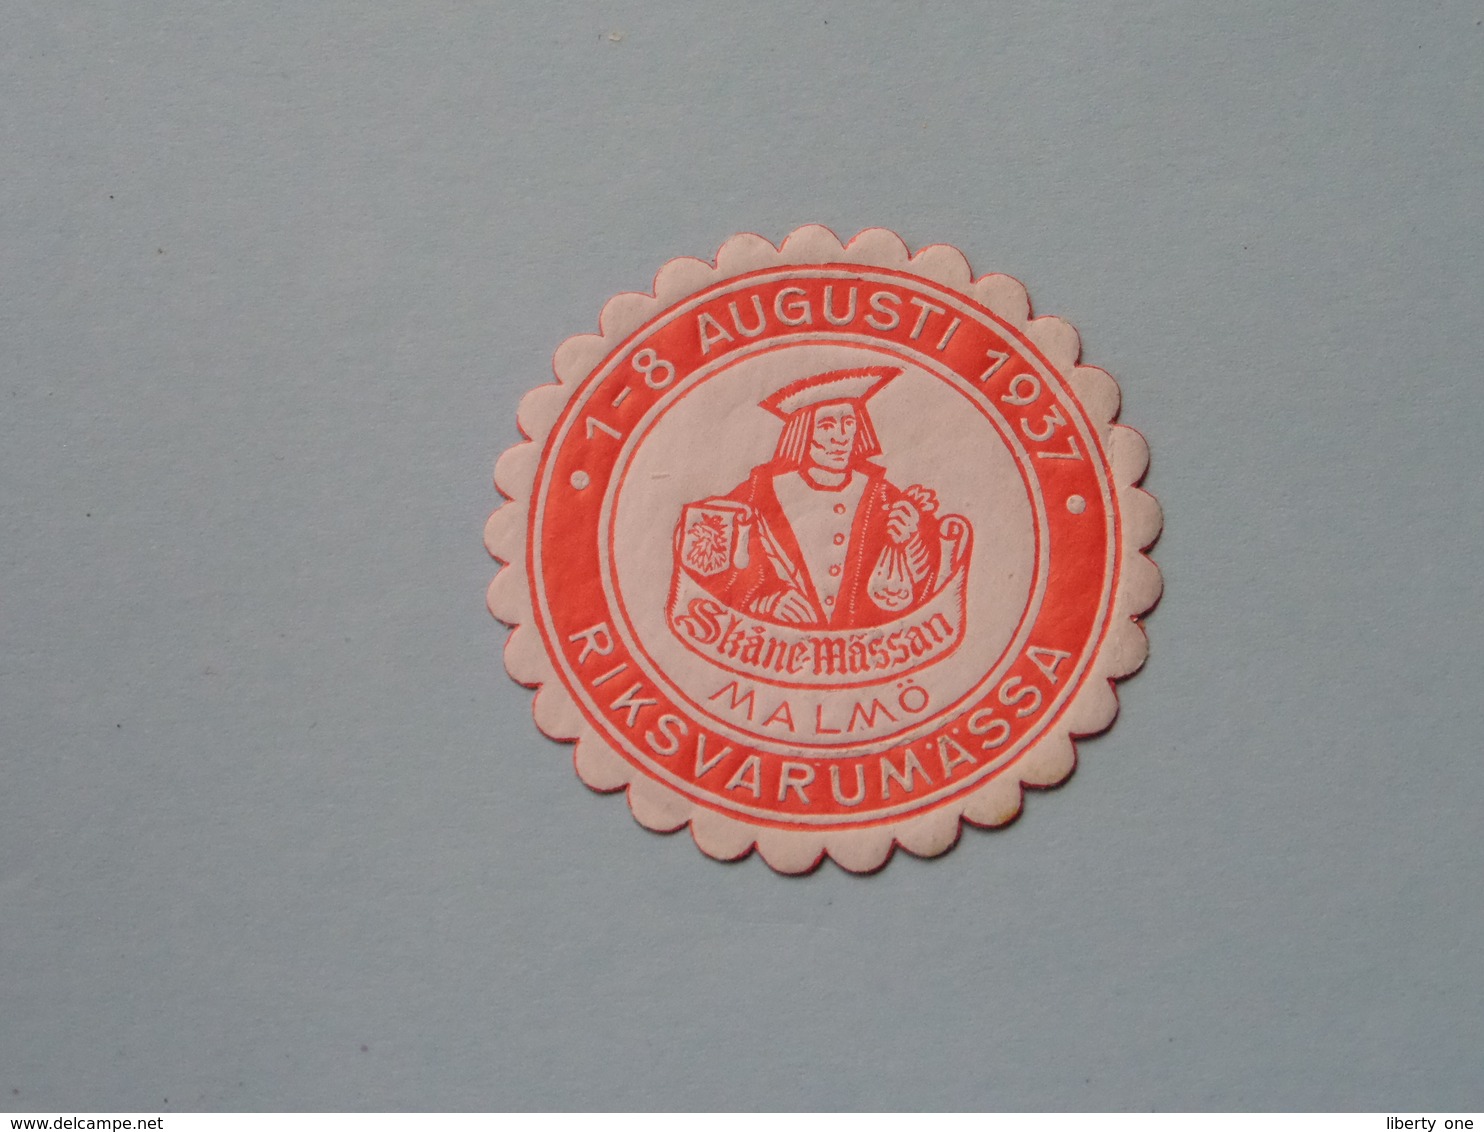 1937 RIKSVARUMASSA MALMÖ ( Sluitzegel Timbres-Vignettes Picture Stamp Verschlussmarken ) - Algemene Zegels